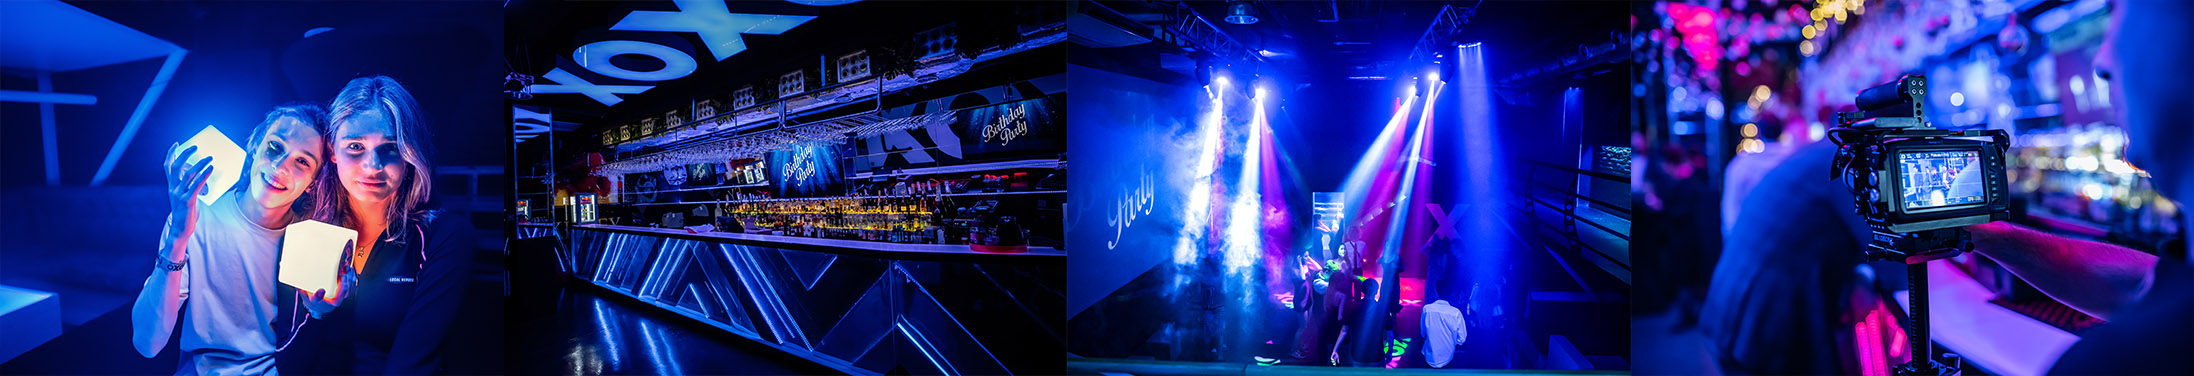 Magiczne Chwile w Magicznym Miejscu: Idealny Klub do Wynajęcia na Imprezę prywatną oraz Firmową w XOXO EVENT SPAC